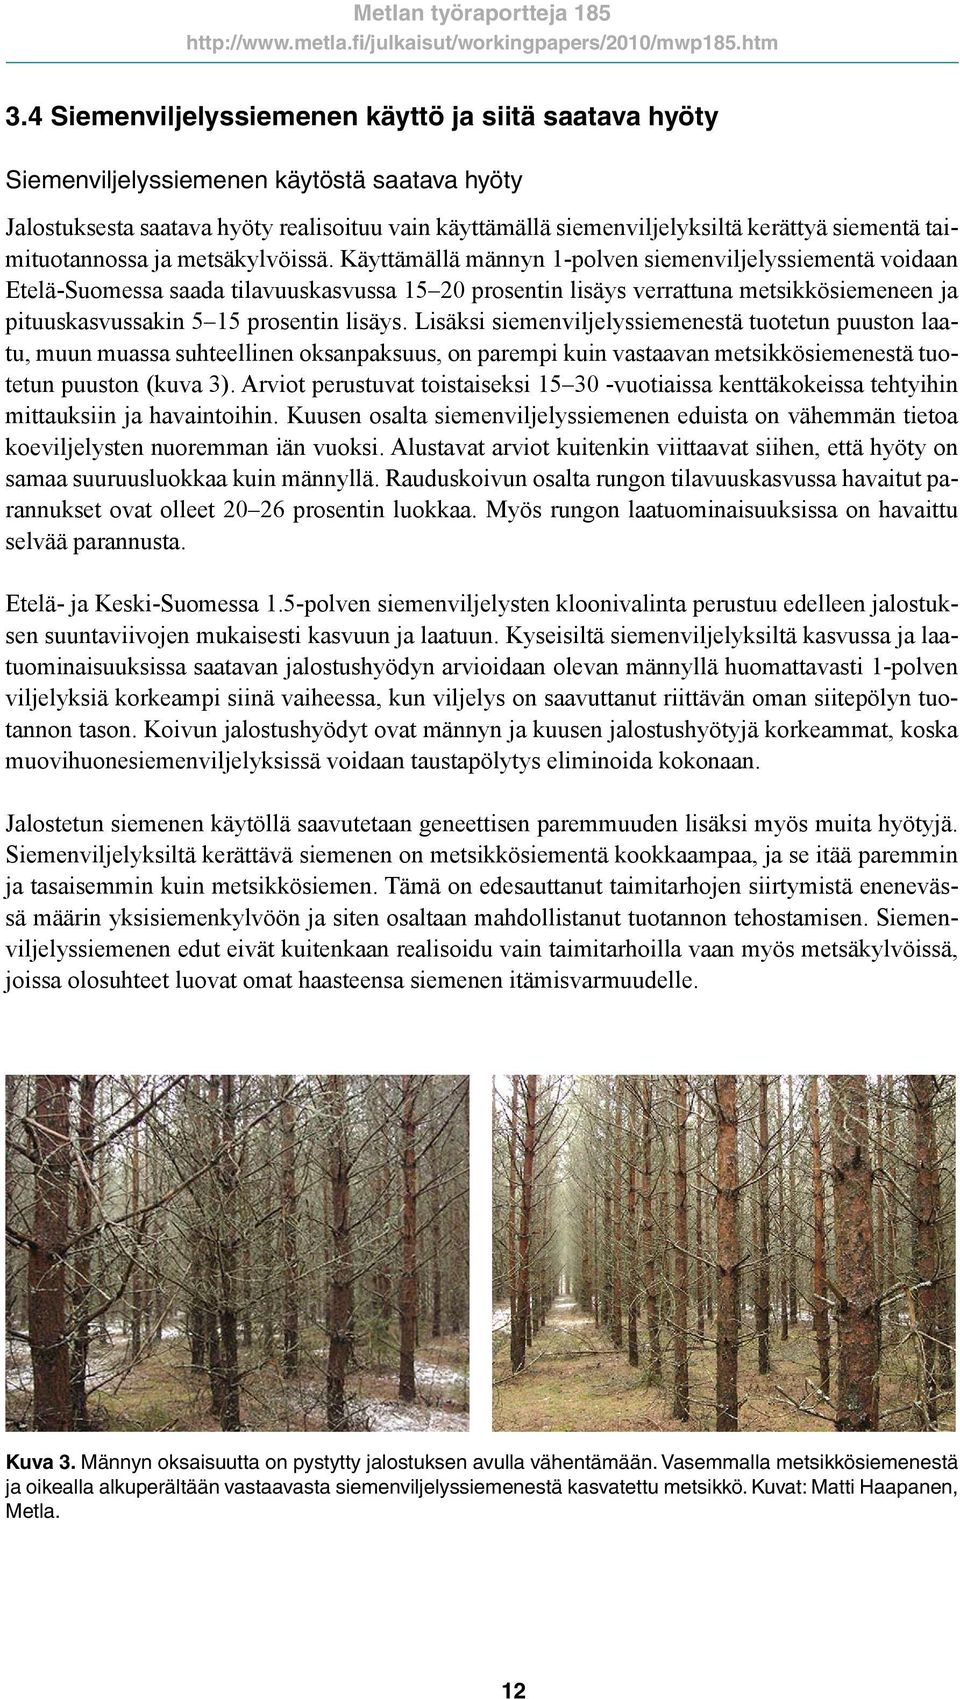 Käyttämällä männyn 1-polven siemenviljelyssiementä voidaan Etelä-Suomessa saada tilavuuskasvussa 15 20 prosentin lisäys verrattuna metsikkösiemeneen ja pituuskasvussakin 5 15 prosentin lisäys.